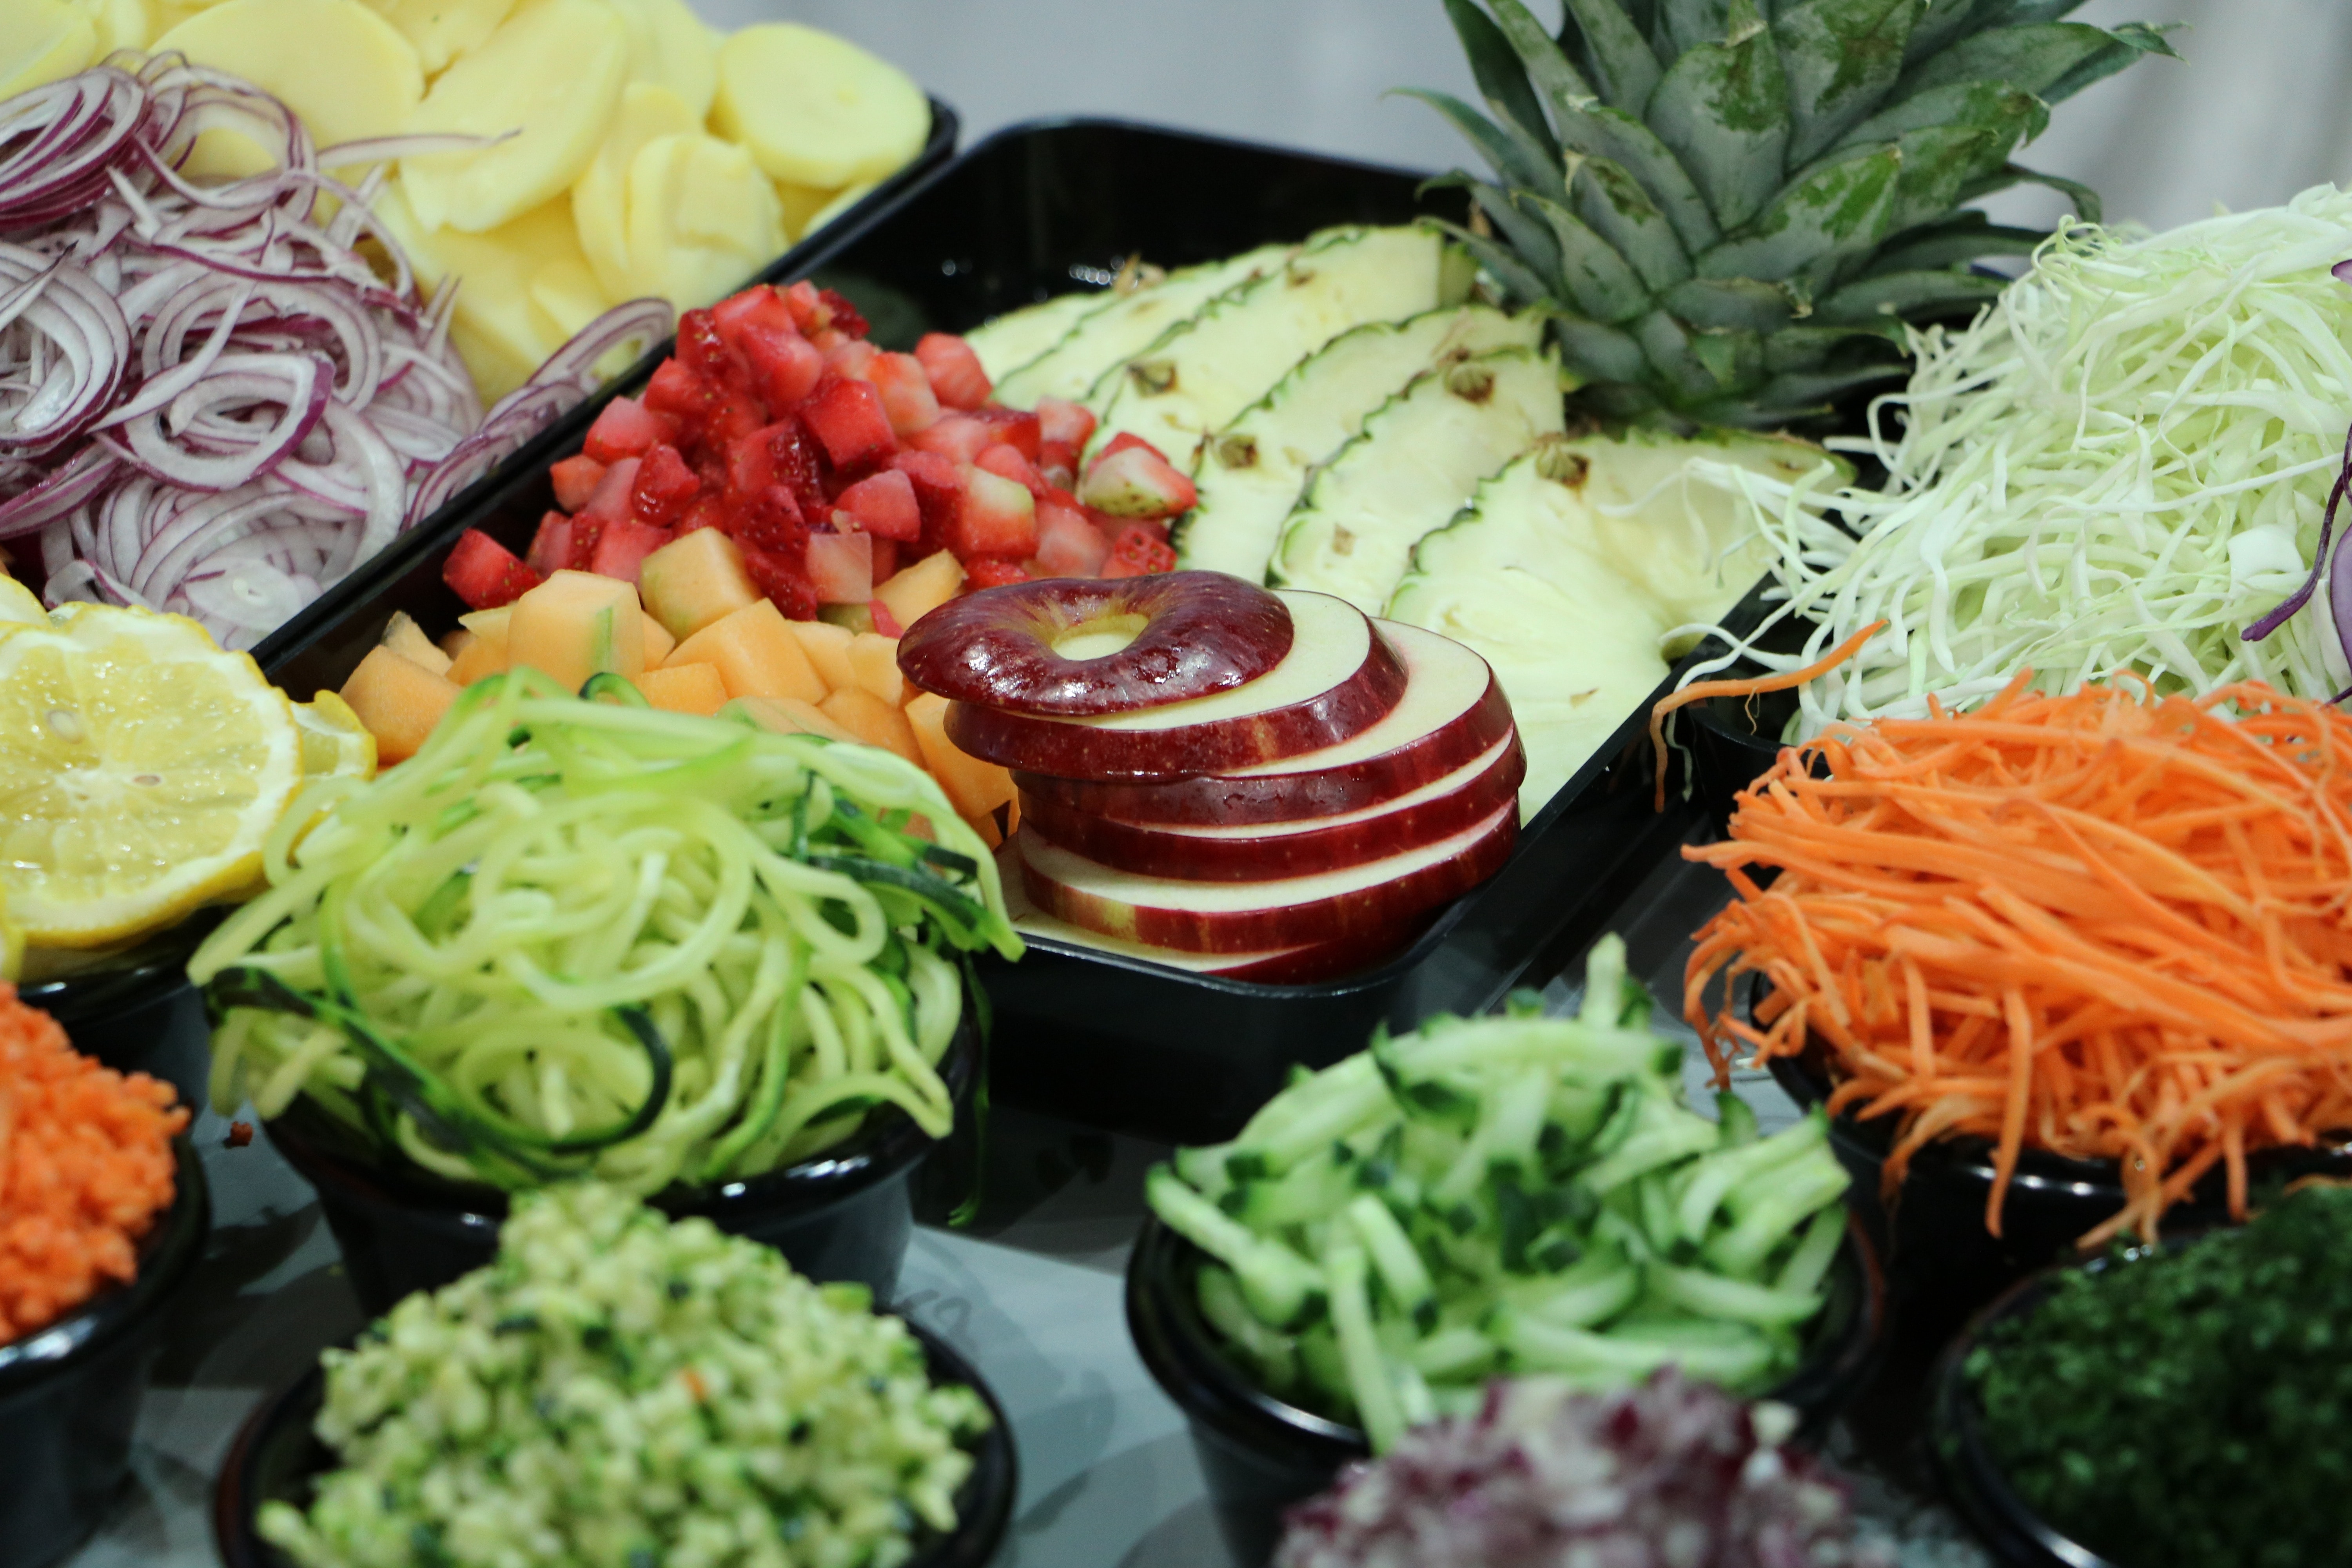 Vegetables, Fruit, Fruits, Eat, Vitamins, vegetable, food and drink